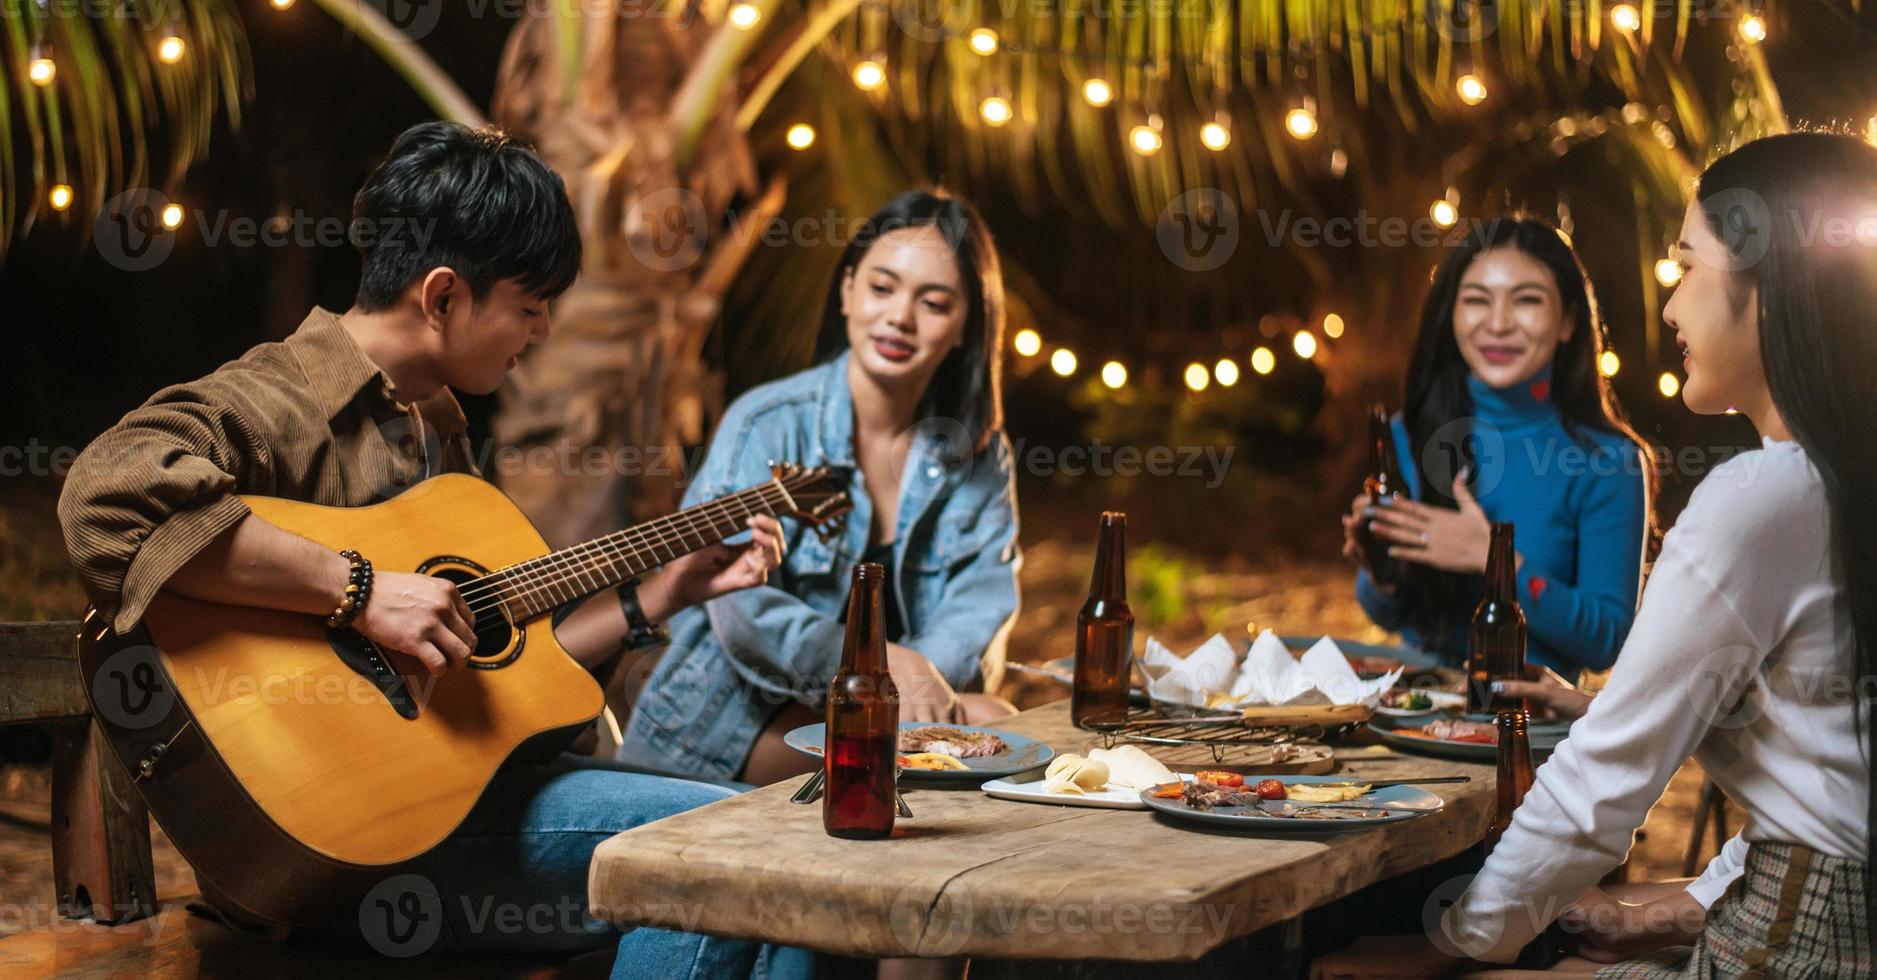 retrato de grupo asiático feliz de amigos se divertindo com música jantando e bebendo juntos ao ar livre - grupo de amigos felizes brindando cervejas - pessoas, comida, estilo de vida de bebida, conceito de celebração de ano novo. foto